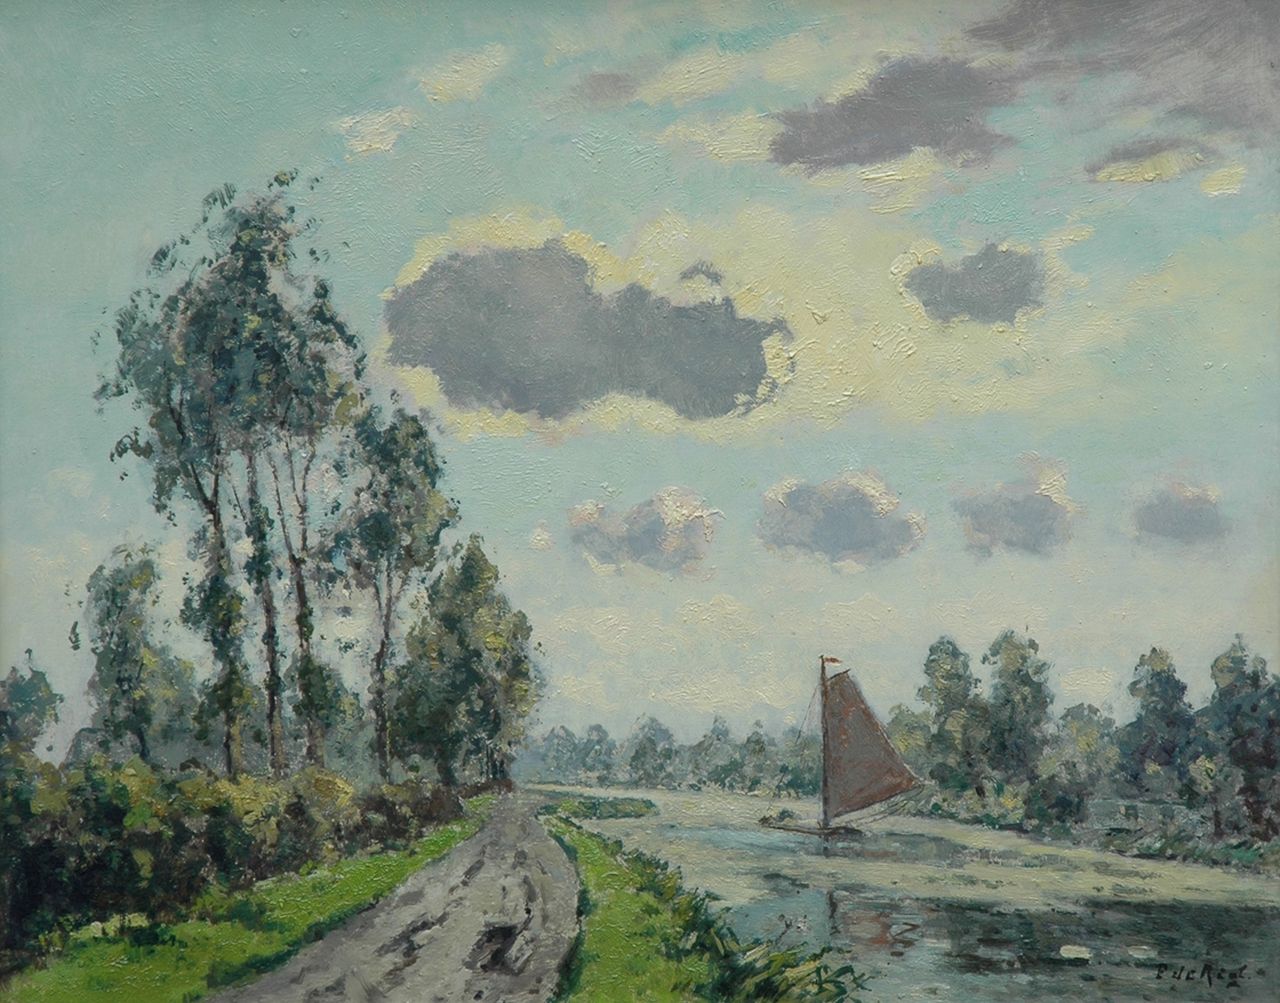 Regt P. de | Pieter 'Piet' de Regt, Along the Vliet near Voorschoten, Öl auf Leinwand 40,3 x 50,5 cm, signed l.r.